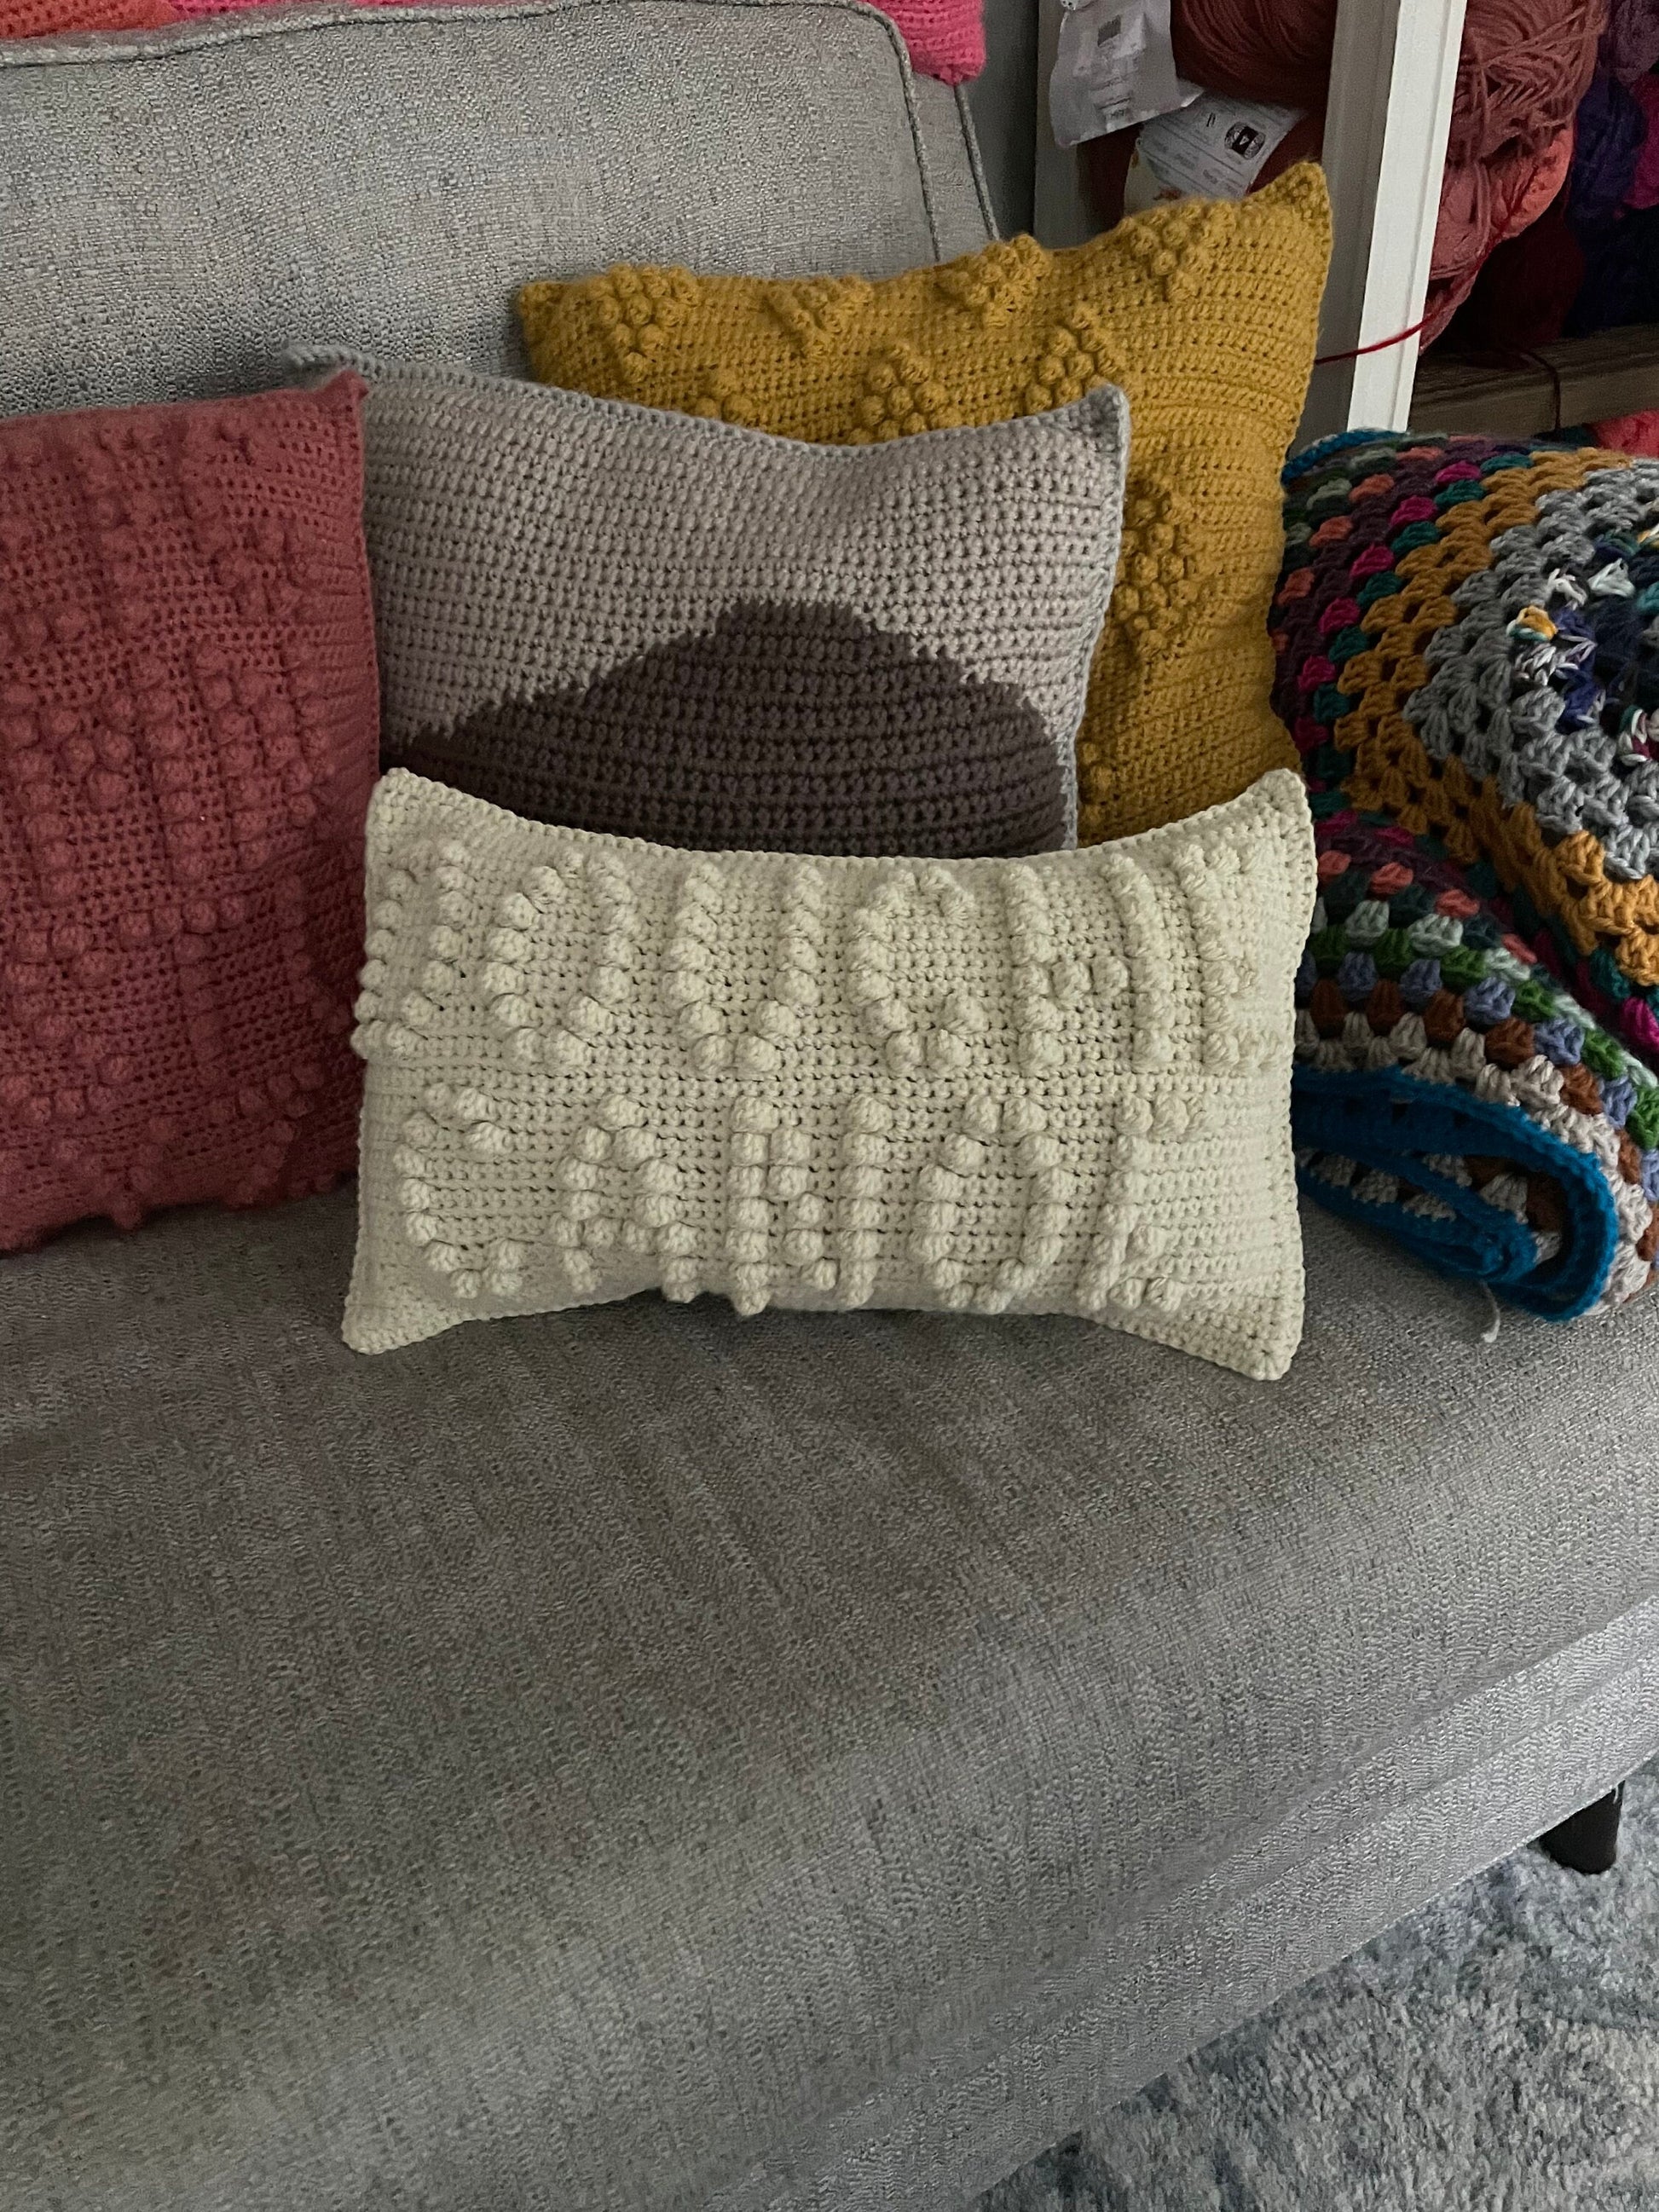 CROCHET PATTERN- Douche Canoe Crochet Pillow, Canoe Crochet Pillow, Funny Crochet